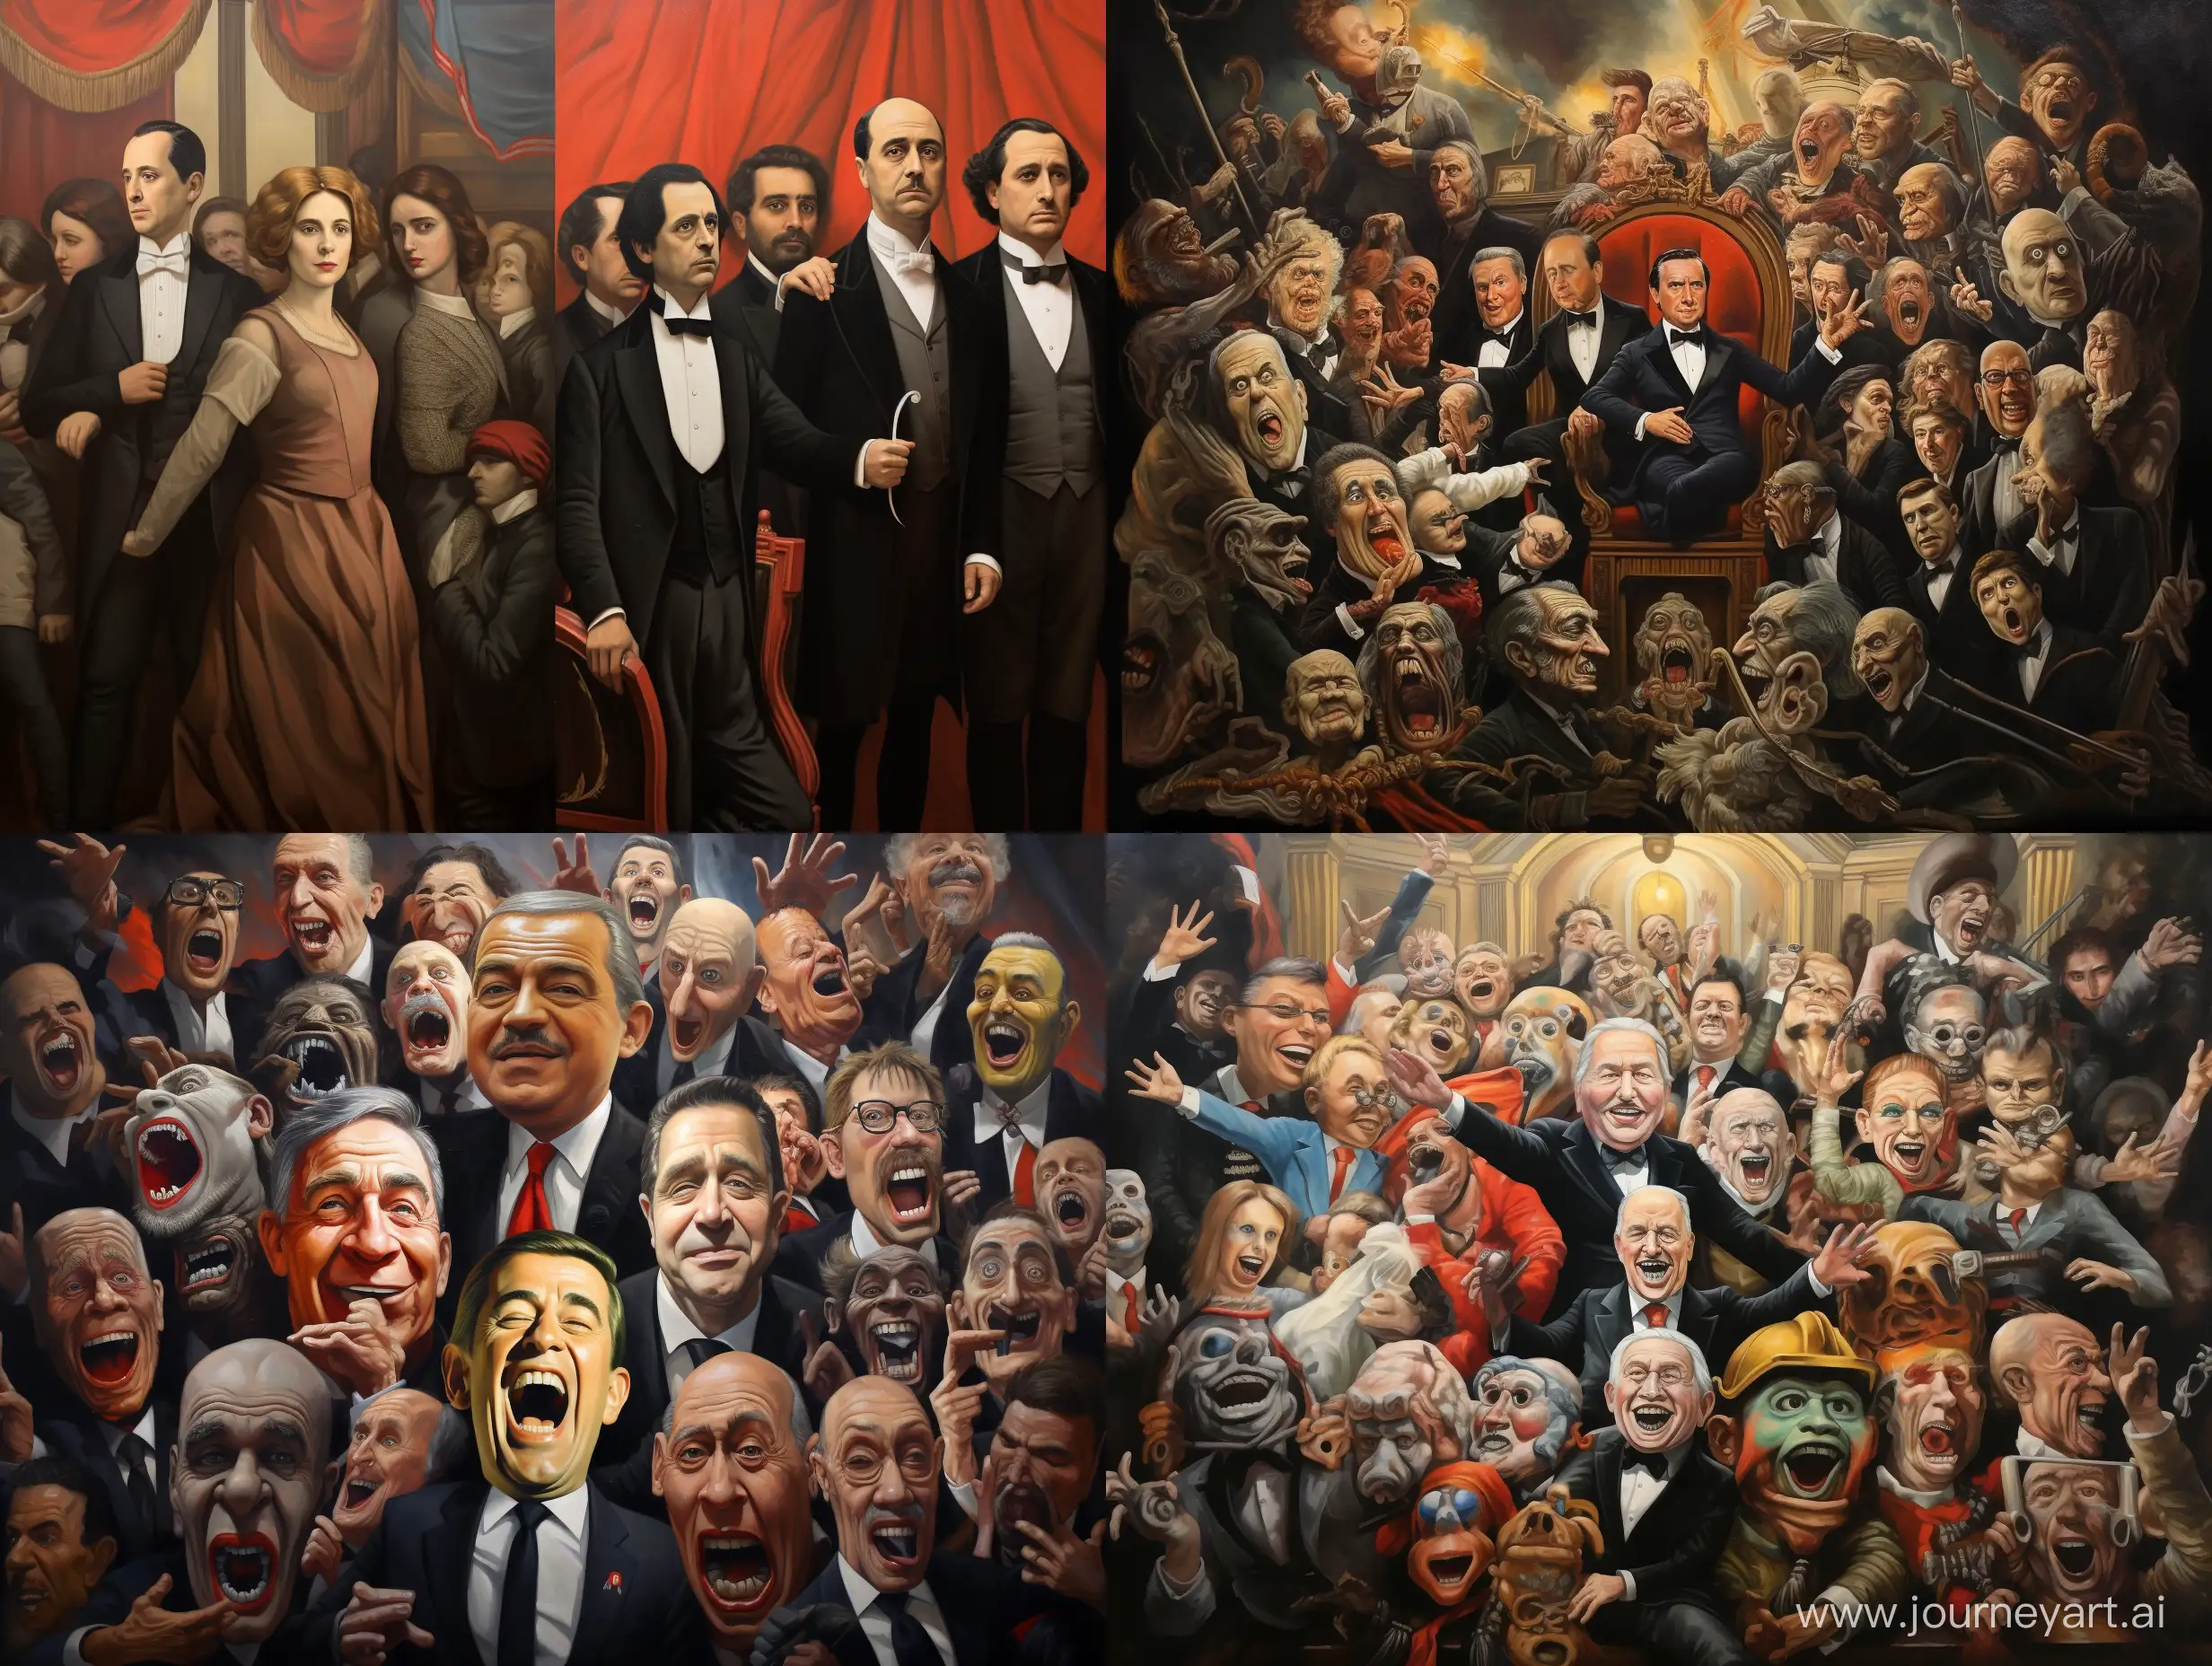 Reproduit le tableau La Scène en remplacant chaque personnage par celui d’un dirigeant politique.